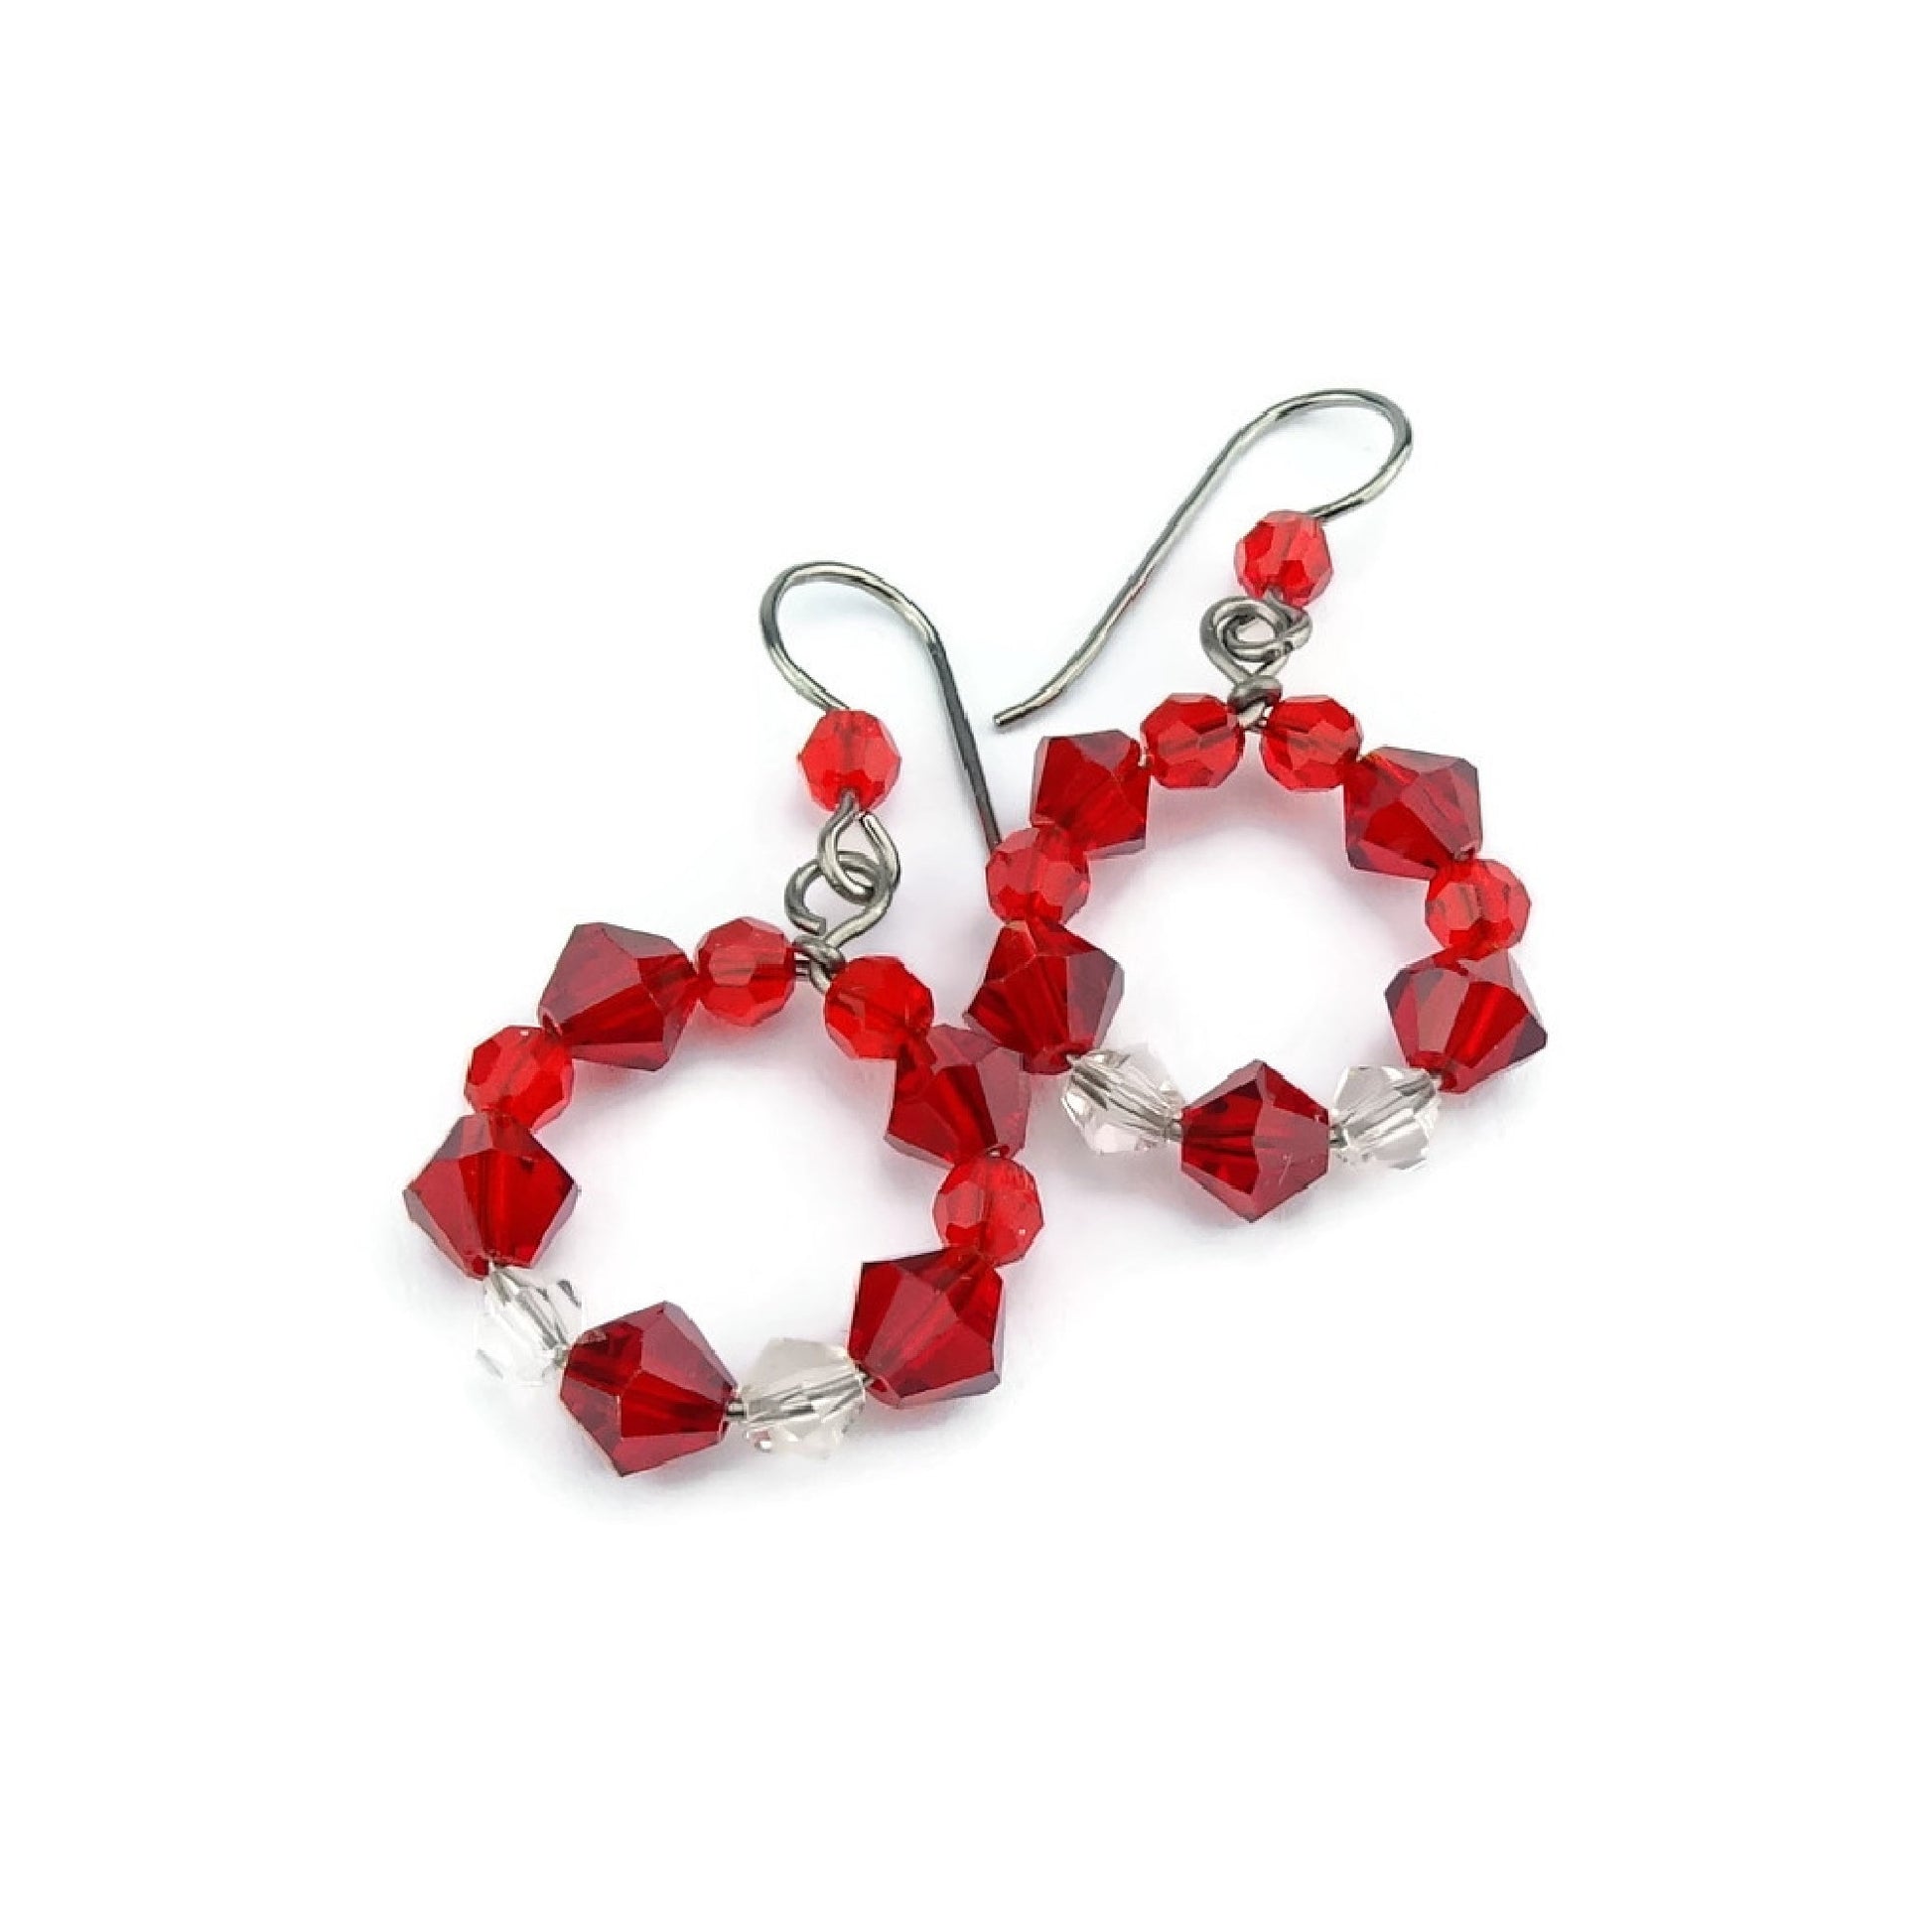 Red Crystal Hoops, Titanium Earrings, Siam Red Swarovski, Niobium Earrings for Sensitive Ears, Hypoallergenic Nickel Free, Red Beaded Circle